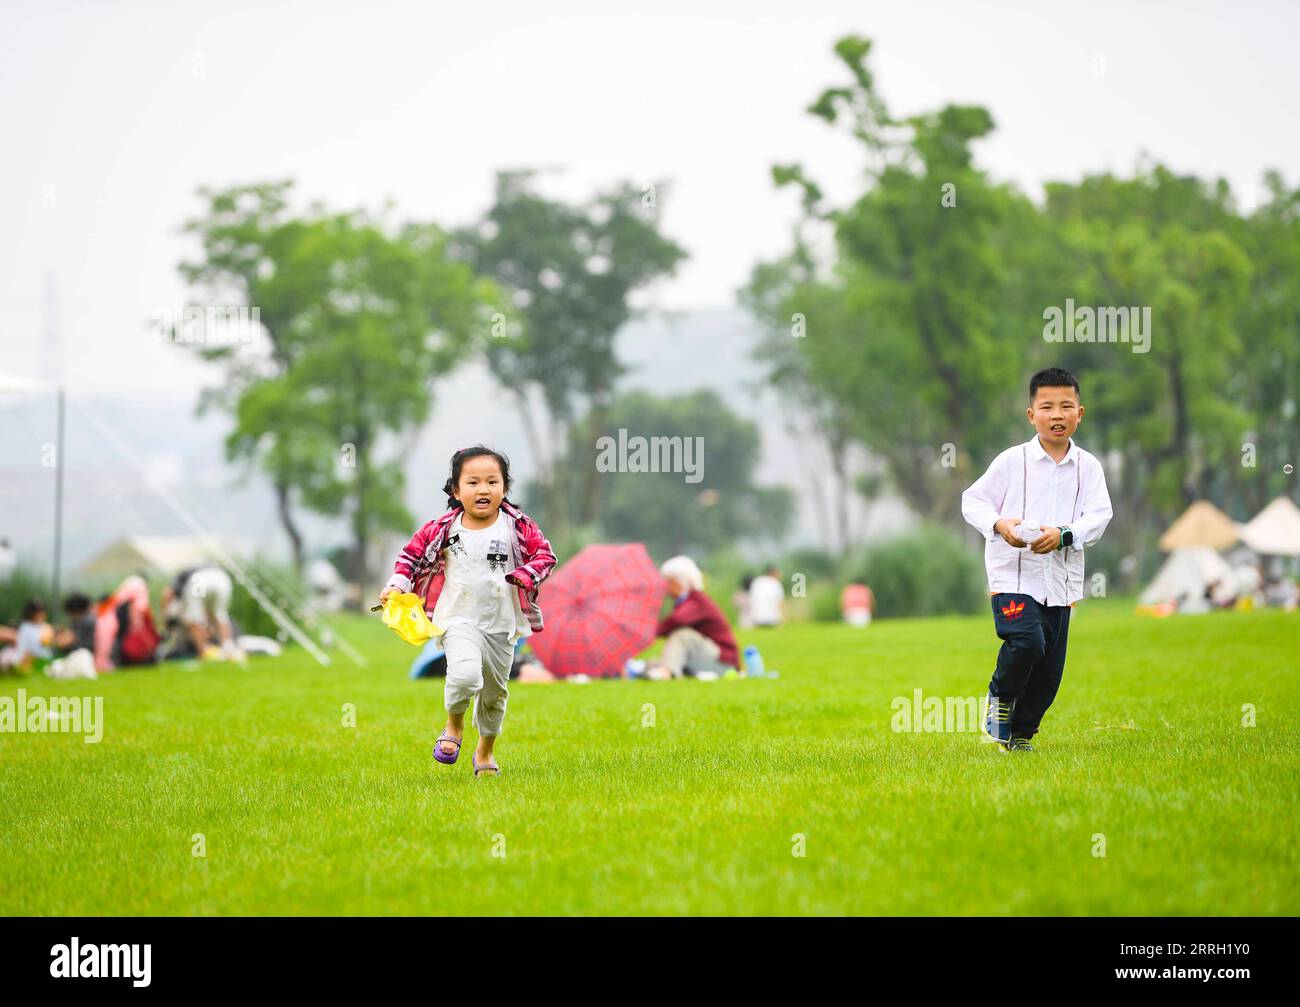 220608 -- CHONGQING, 8 giugno 2022 -- i bambini si divertono nell'isola di Guangyang a Chongqing, nel sud-ovest della Cina, 5 giugno 2022. L'isola di Guangyang, la più grande isola sulla parte superiore del fiume Yangtze, è ricca di risorse naturali. Negli ultimi anni sono state adottate una serie di misure per ripristinare l'ambiente ecologico dell'isola, attirando i turisti nei suoi campi colorati. CHINA-CHONGQING-GUANGYANG ISLE-TOURISM CN WANGXQUANCHAO PUBLICATIONXNOTXINXCHN Foto Stock